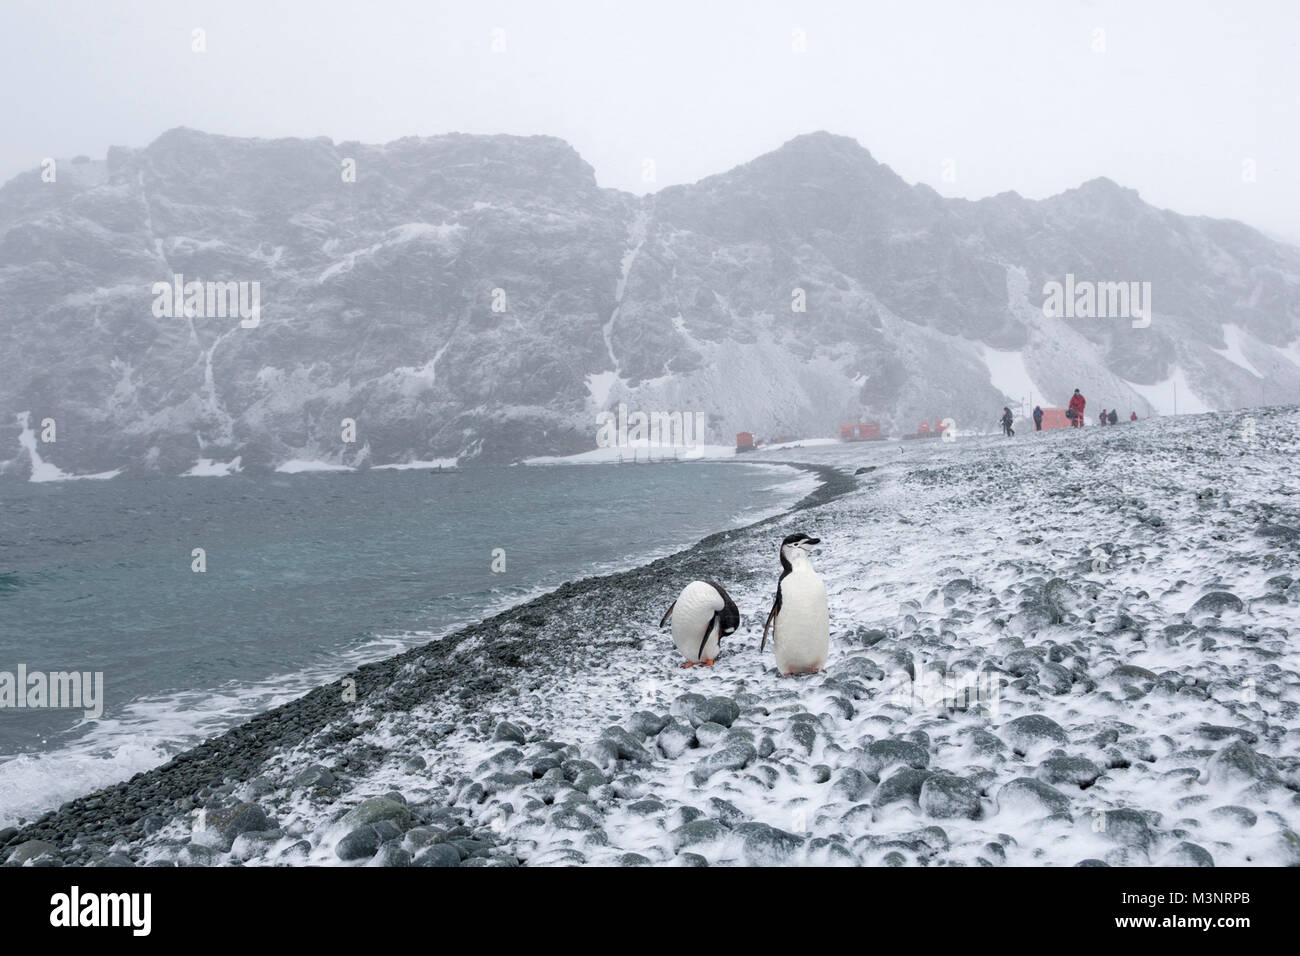 Pingouins sur Rock Beach dans la baie par vent station de recherche pendant une tempête de neige, les gens, les bâtiments, les montagnes en arrière-plan de neige douce Antarctique Banque D'Images